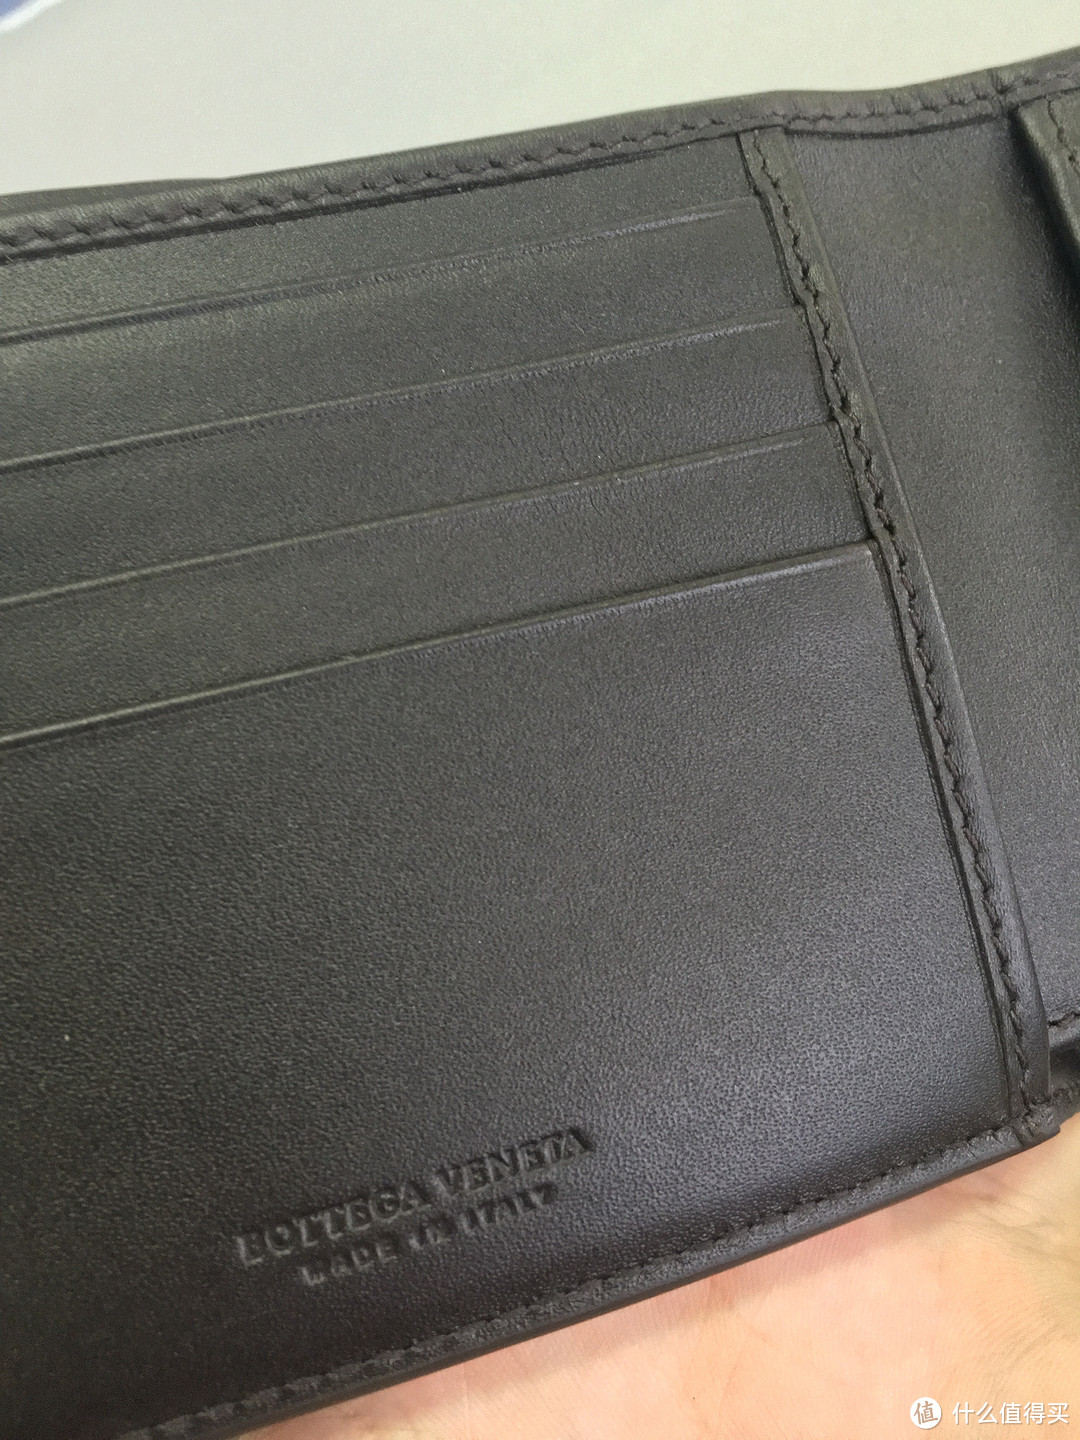 #原创新人#老婆送的生日礼物Part 1：Bottega Veneta 深咖啡色编织皮革钱包